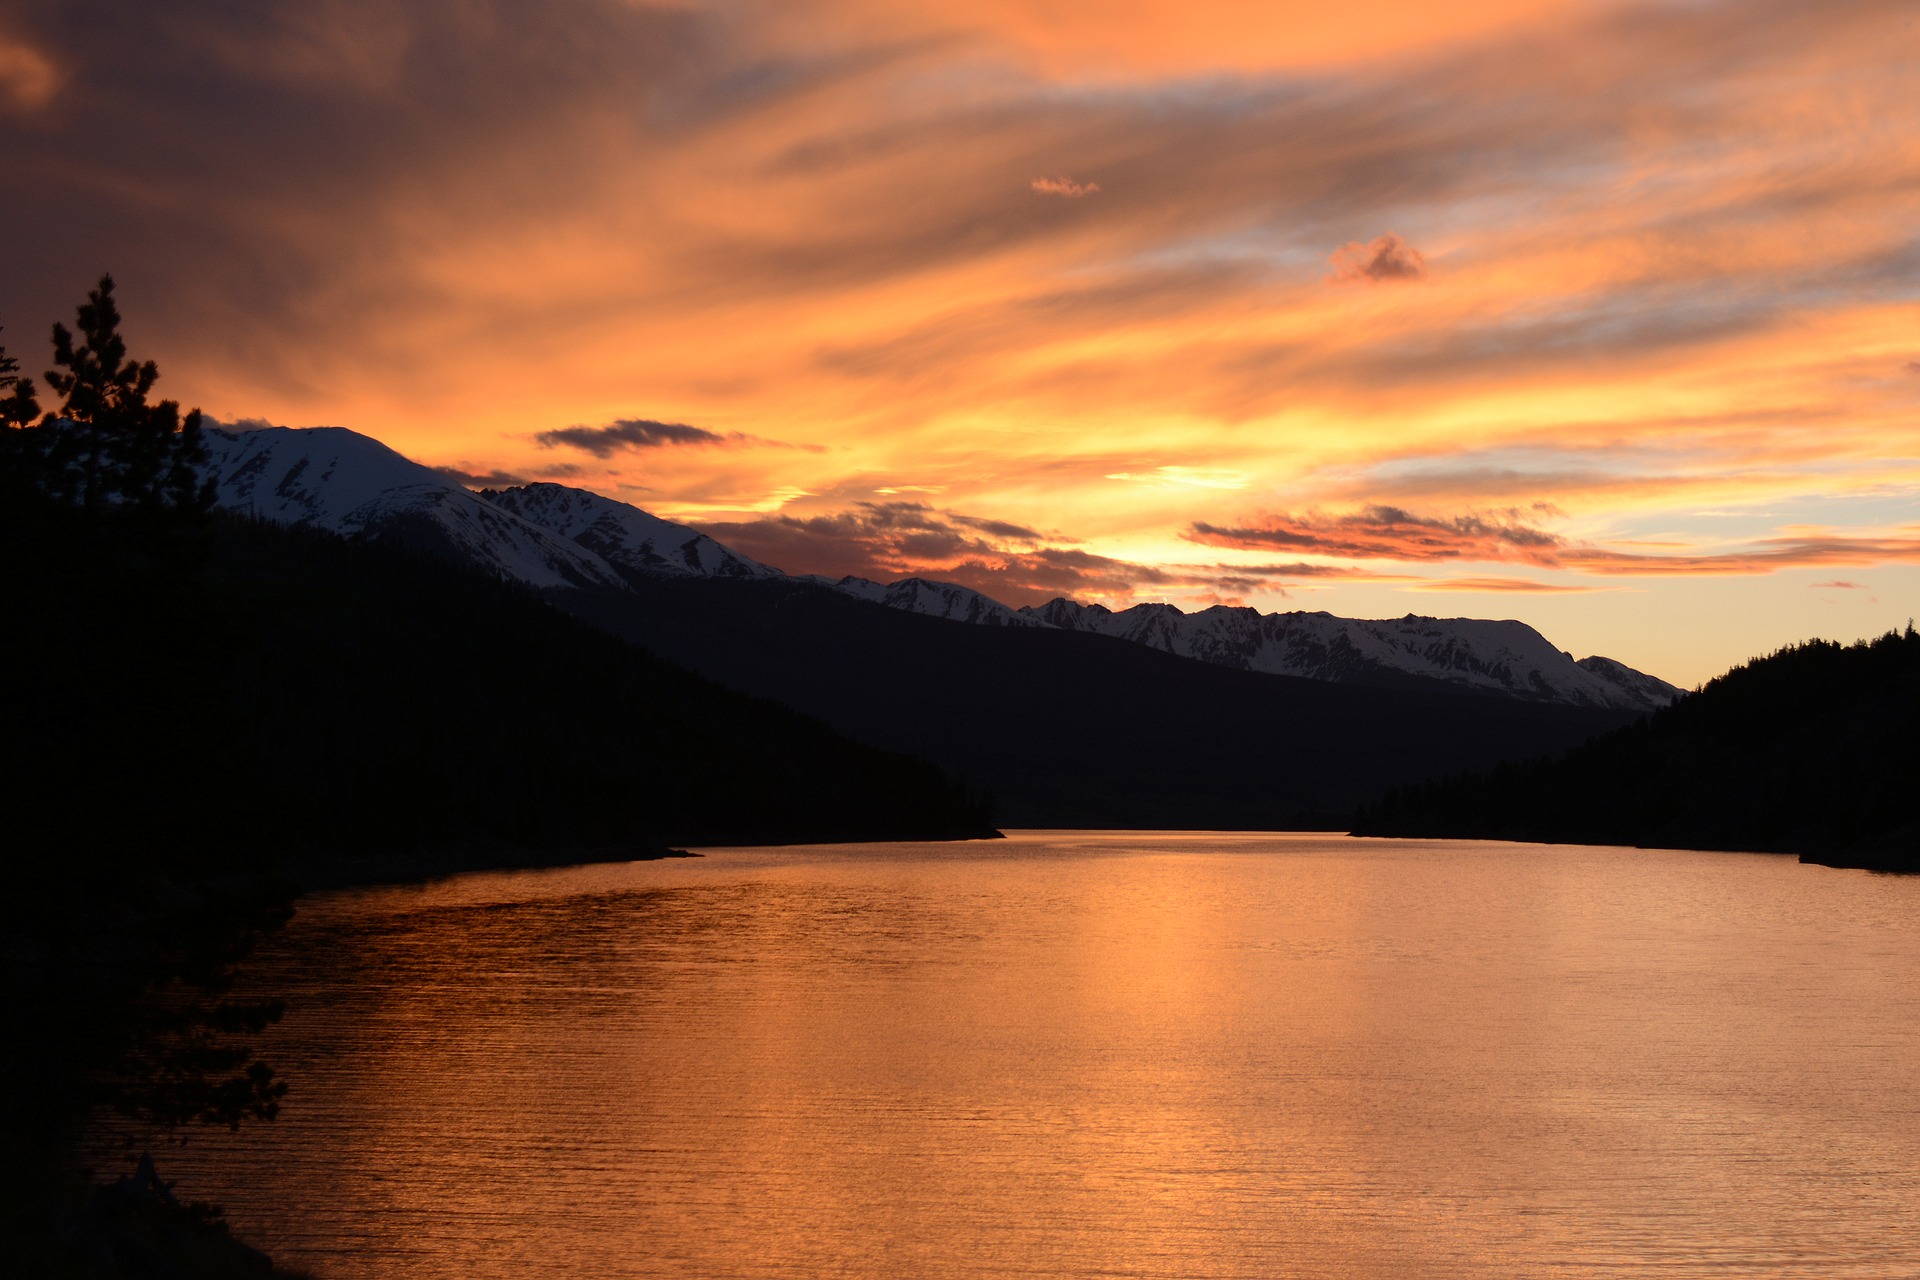 A mountain lake during sunset